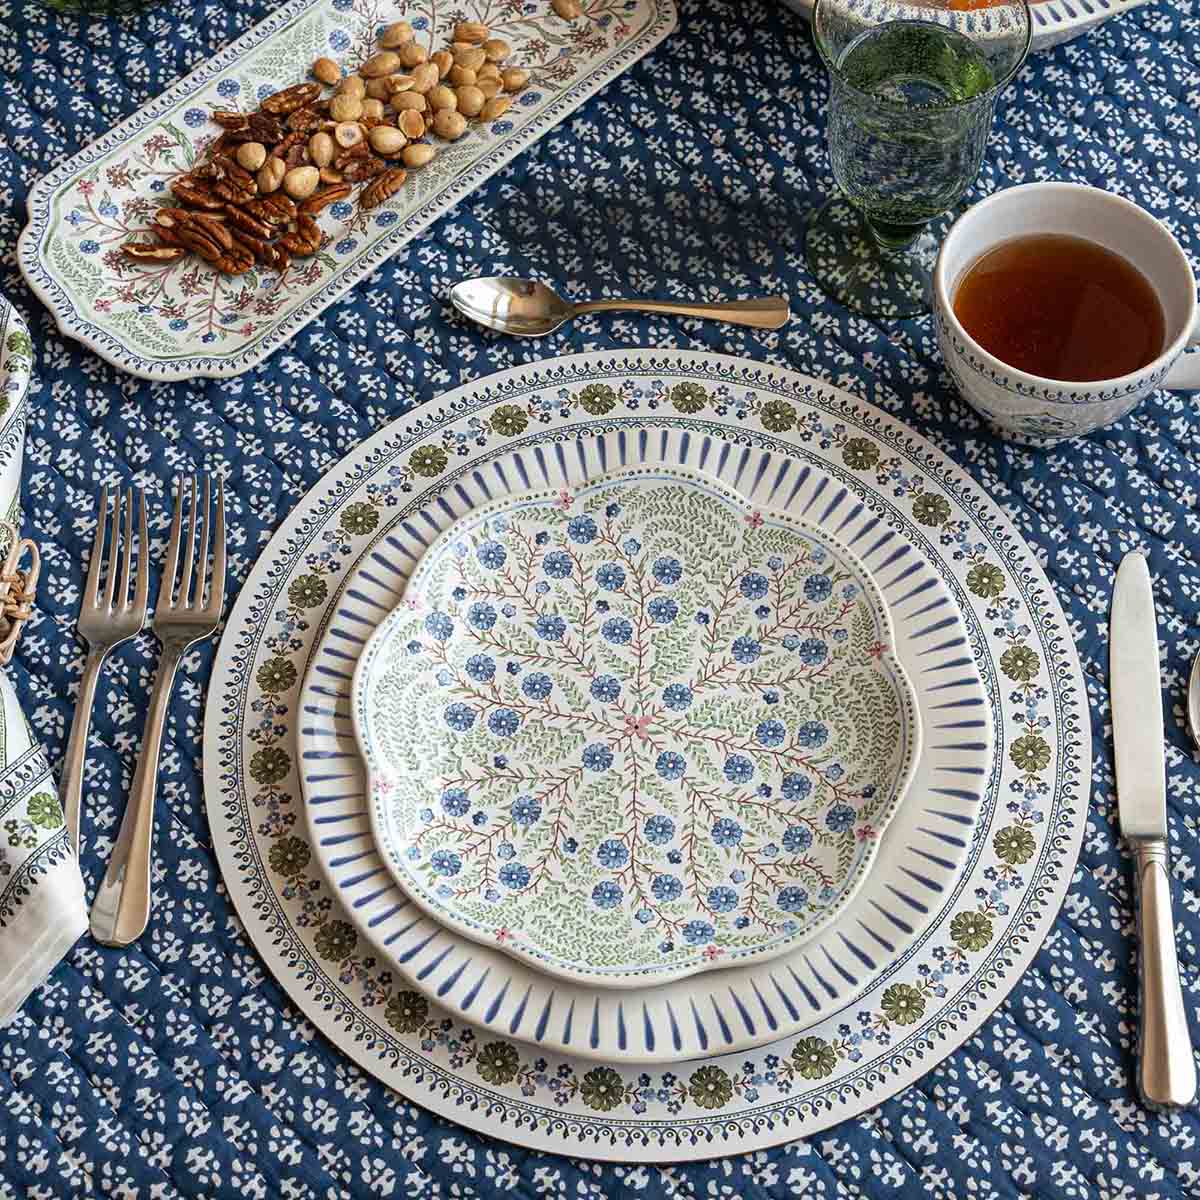 Sitio Stripe Dinner Plate - Delft Blue